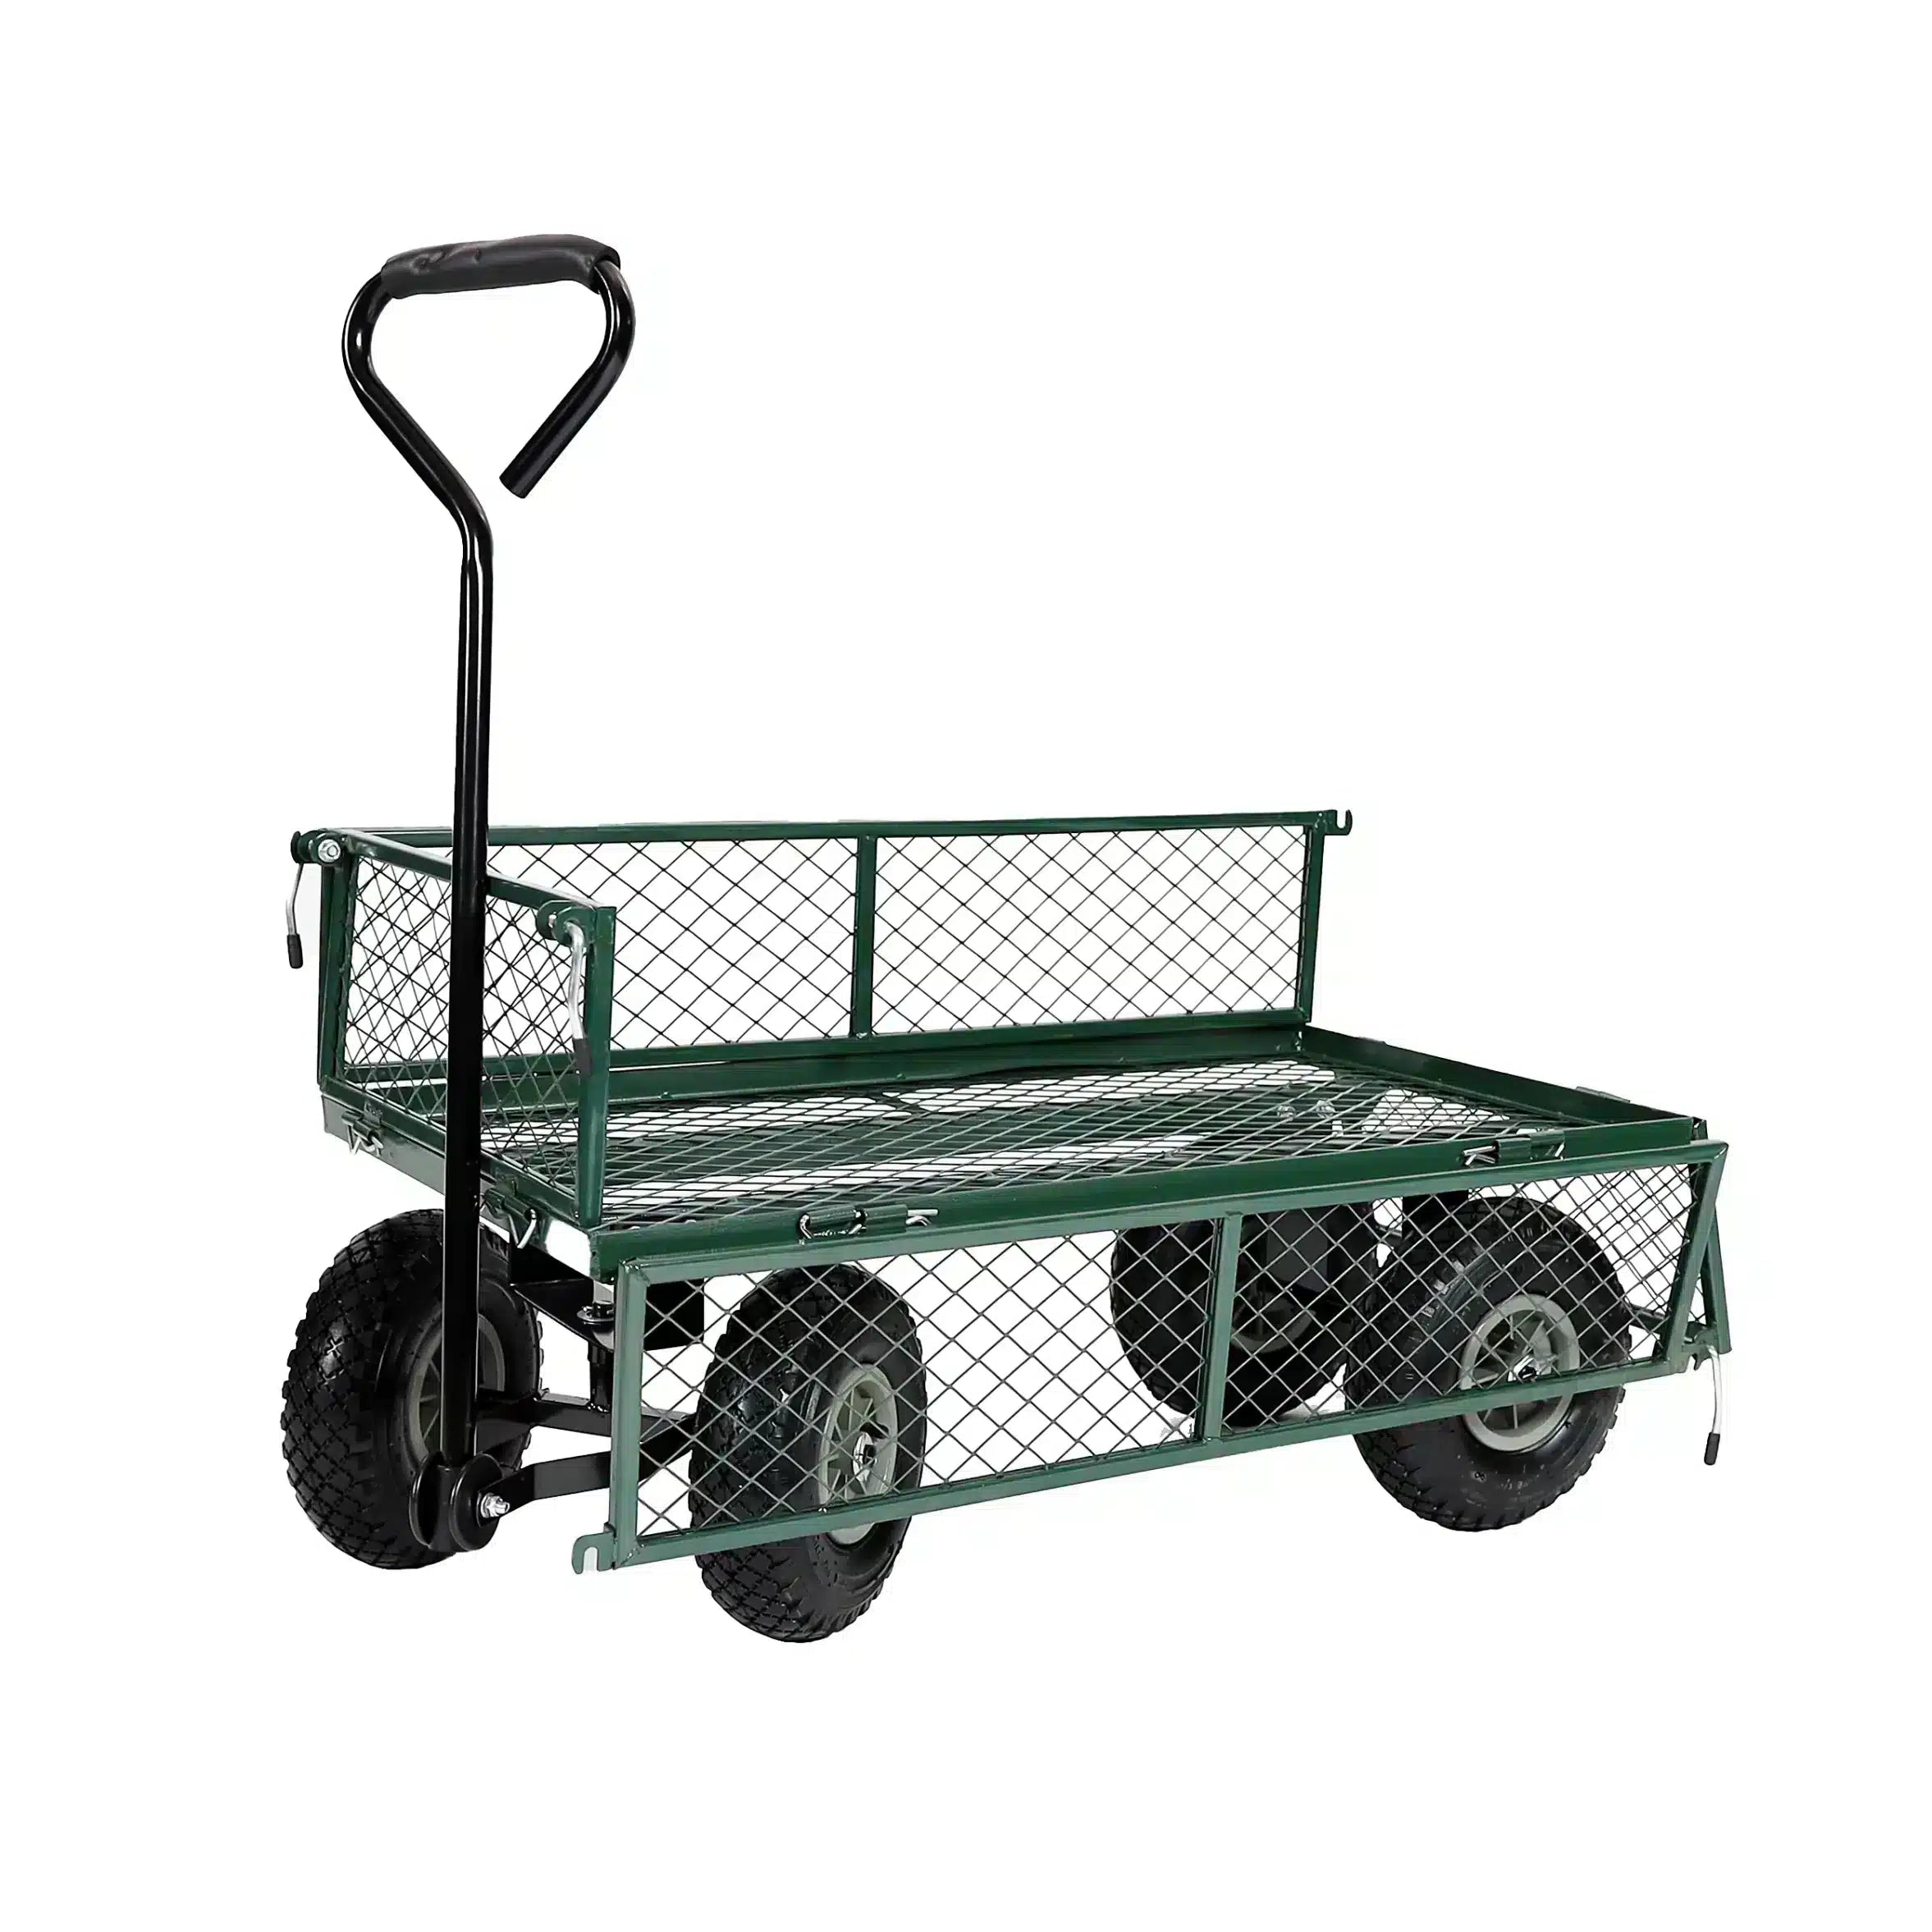 Garden TROLLEY Cart Pull Along Trailer cart 1088